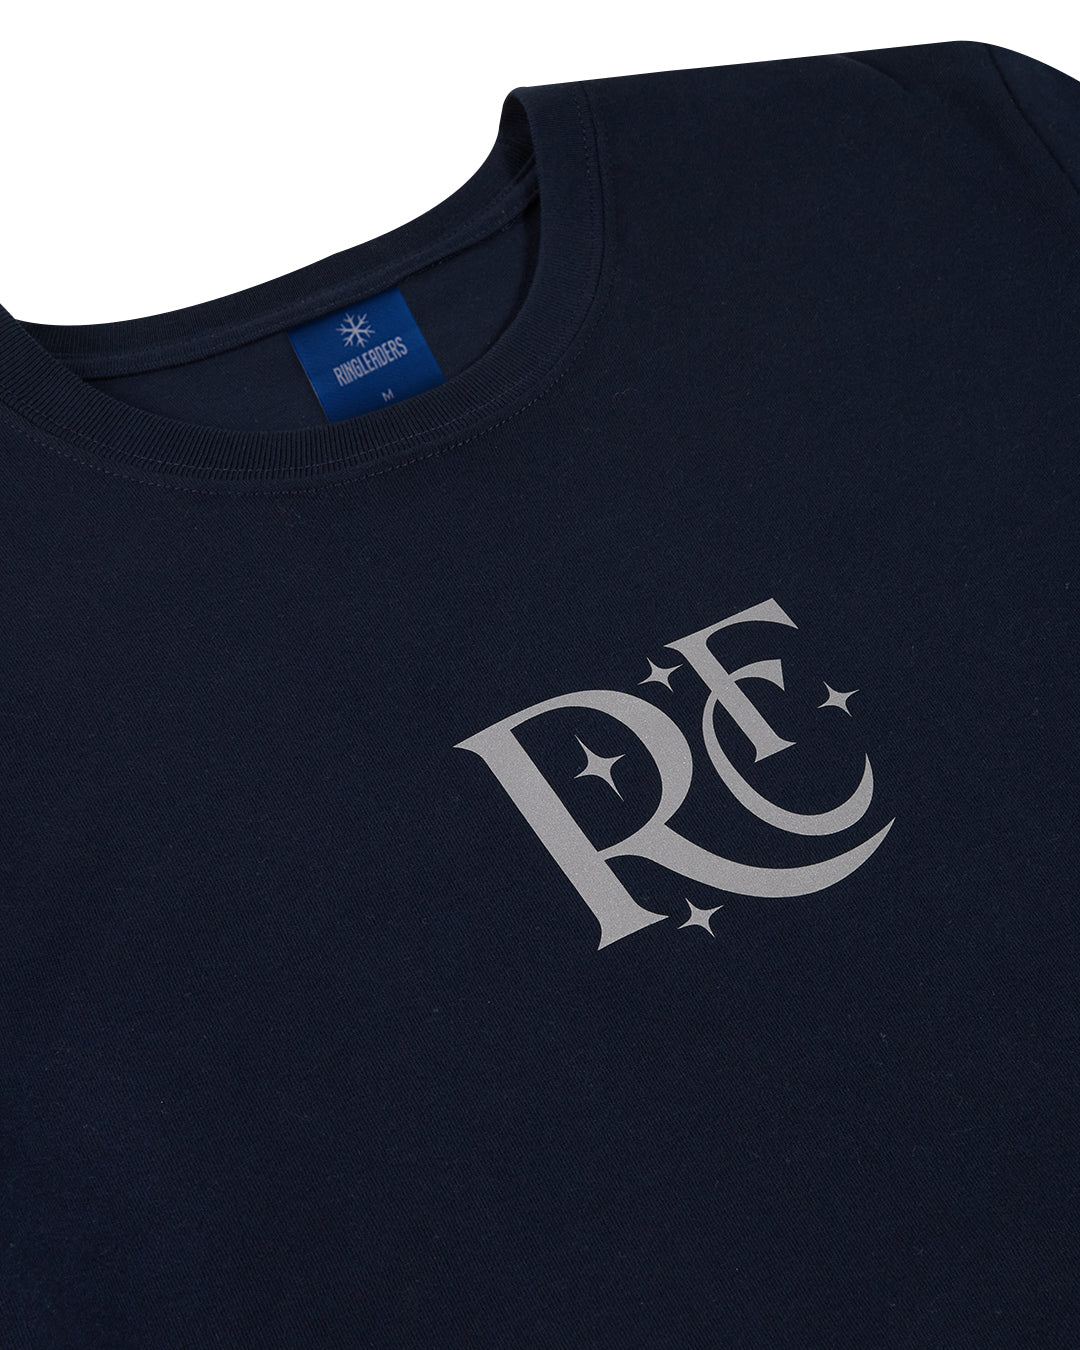 RFC "Stars" L/S T-Shirt (Reflective)